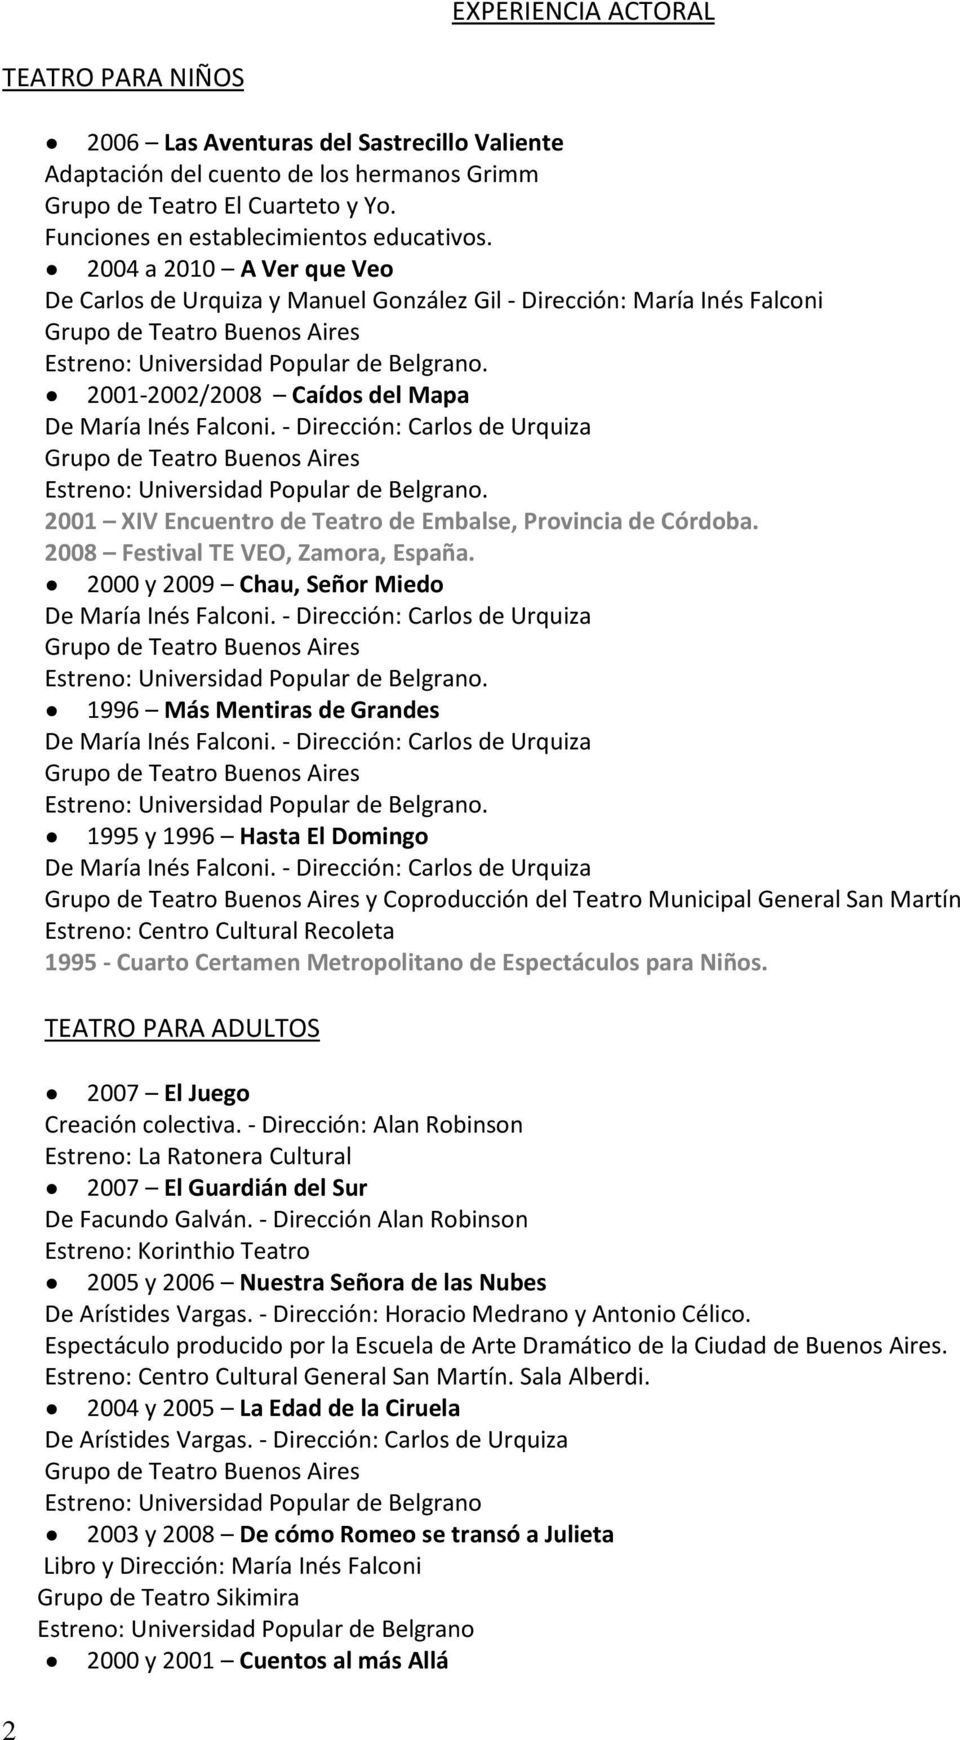 2001 XIV Encuentro de Teatro de Embalse, Provincia de Córdoba. 2008 Festival TE VEO, Zamora, España. 2000 y 2009 Chau, Señor Miedo. 1996 Más Mentiras de Grandes.